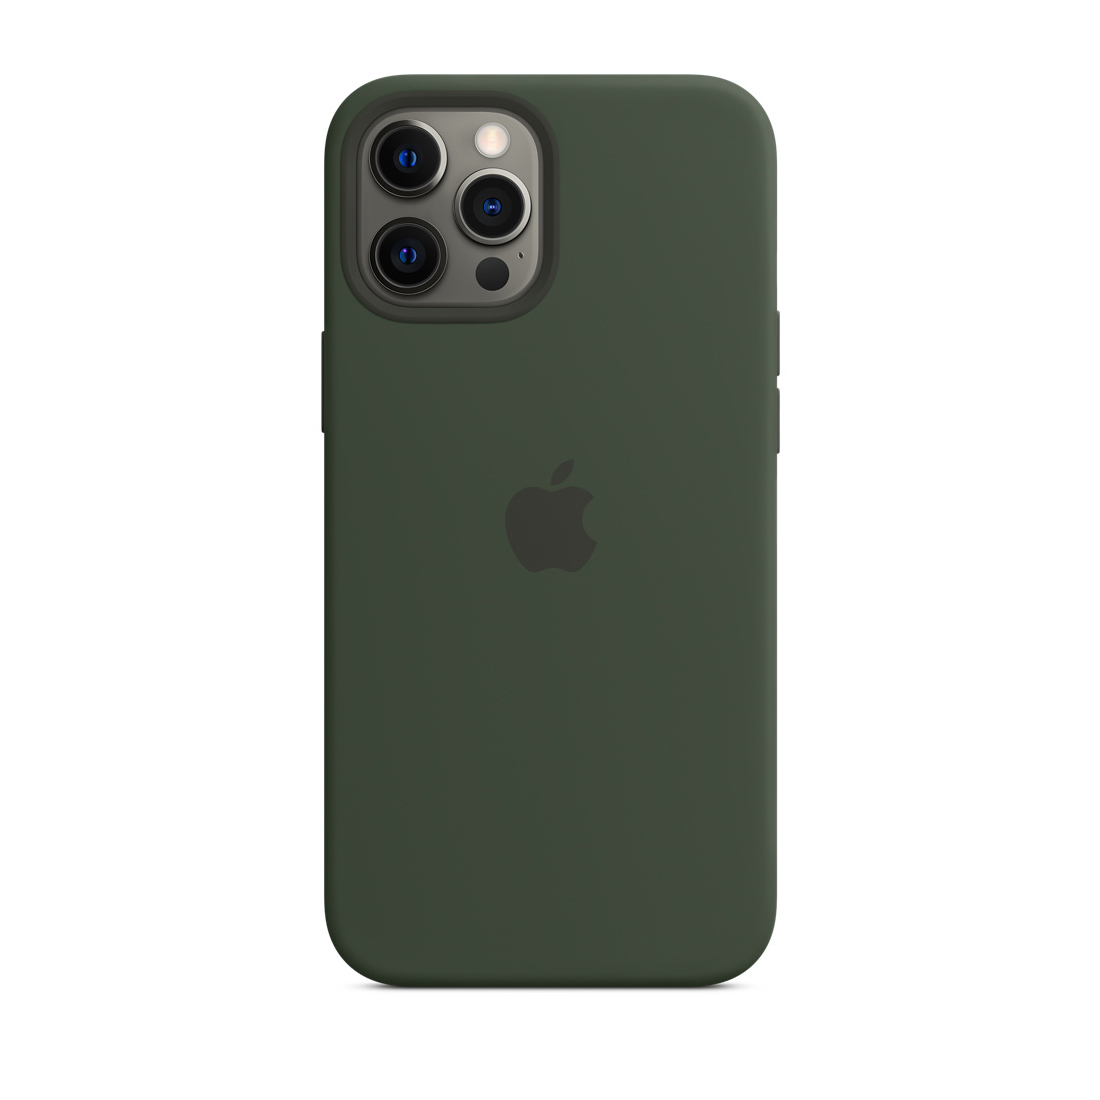 Купить смартфон Чехол Silicone Case с MagSafe для iPhone 12 Pro Max –  выгодная цена 1 990 руб в Apple City - интернет-магазин техники Apple iPhone,  iMac, iPad, Watch